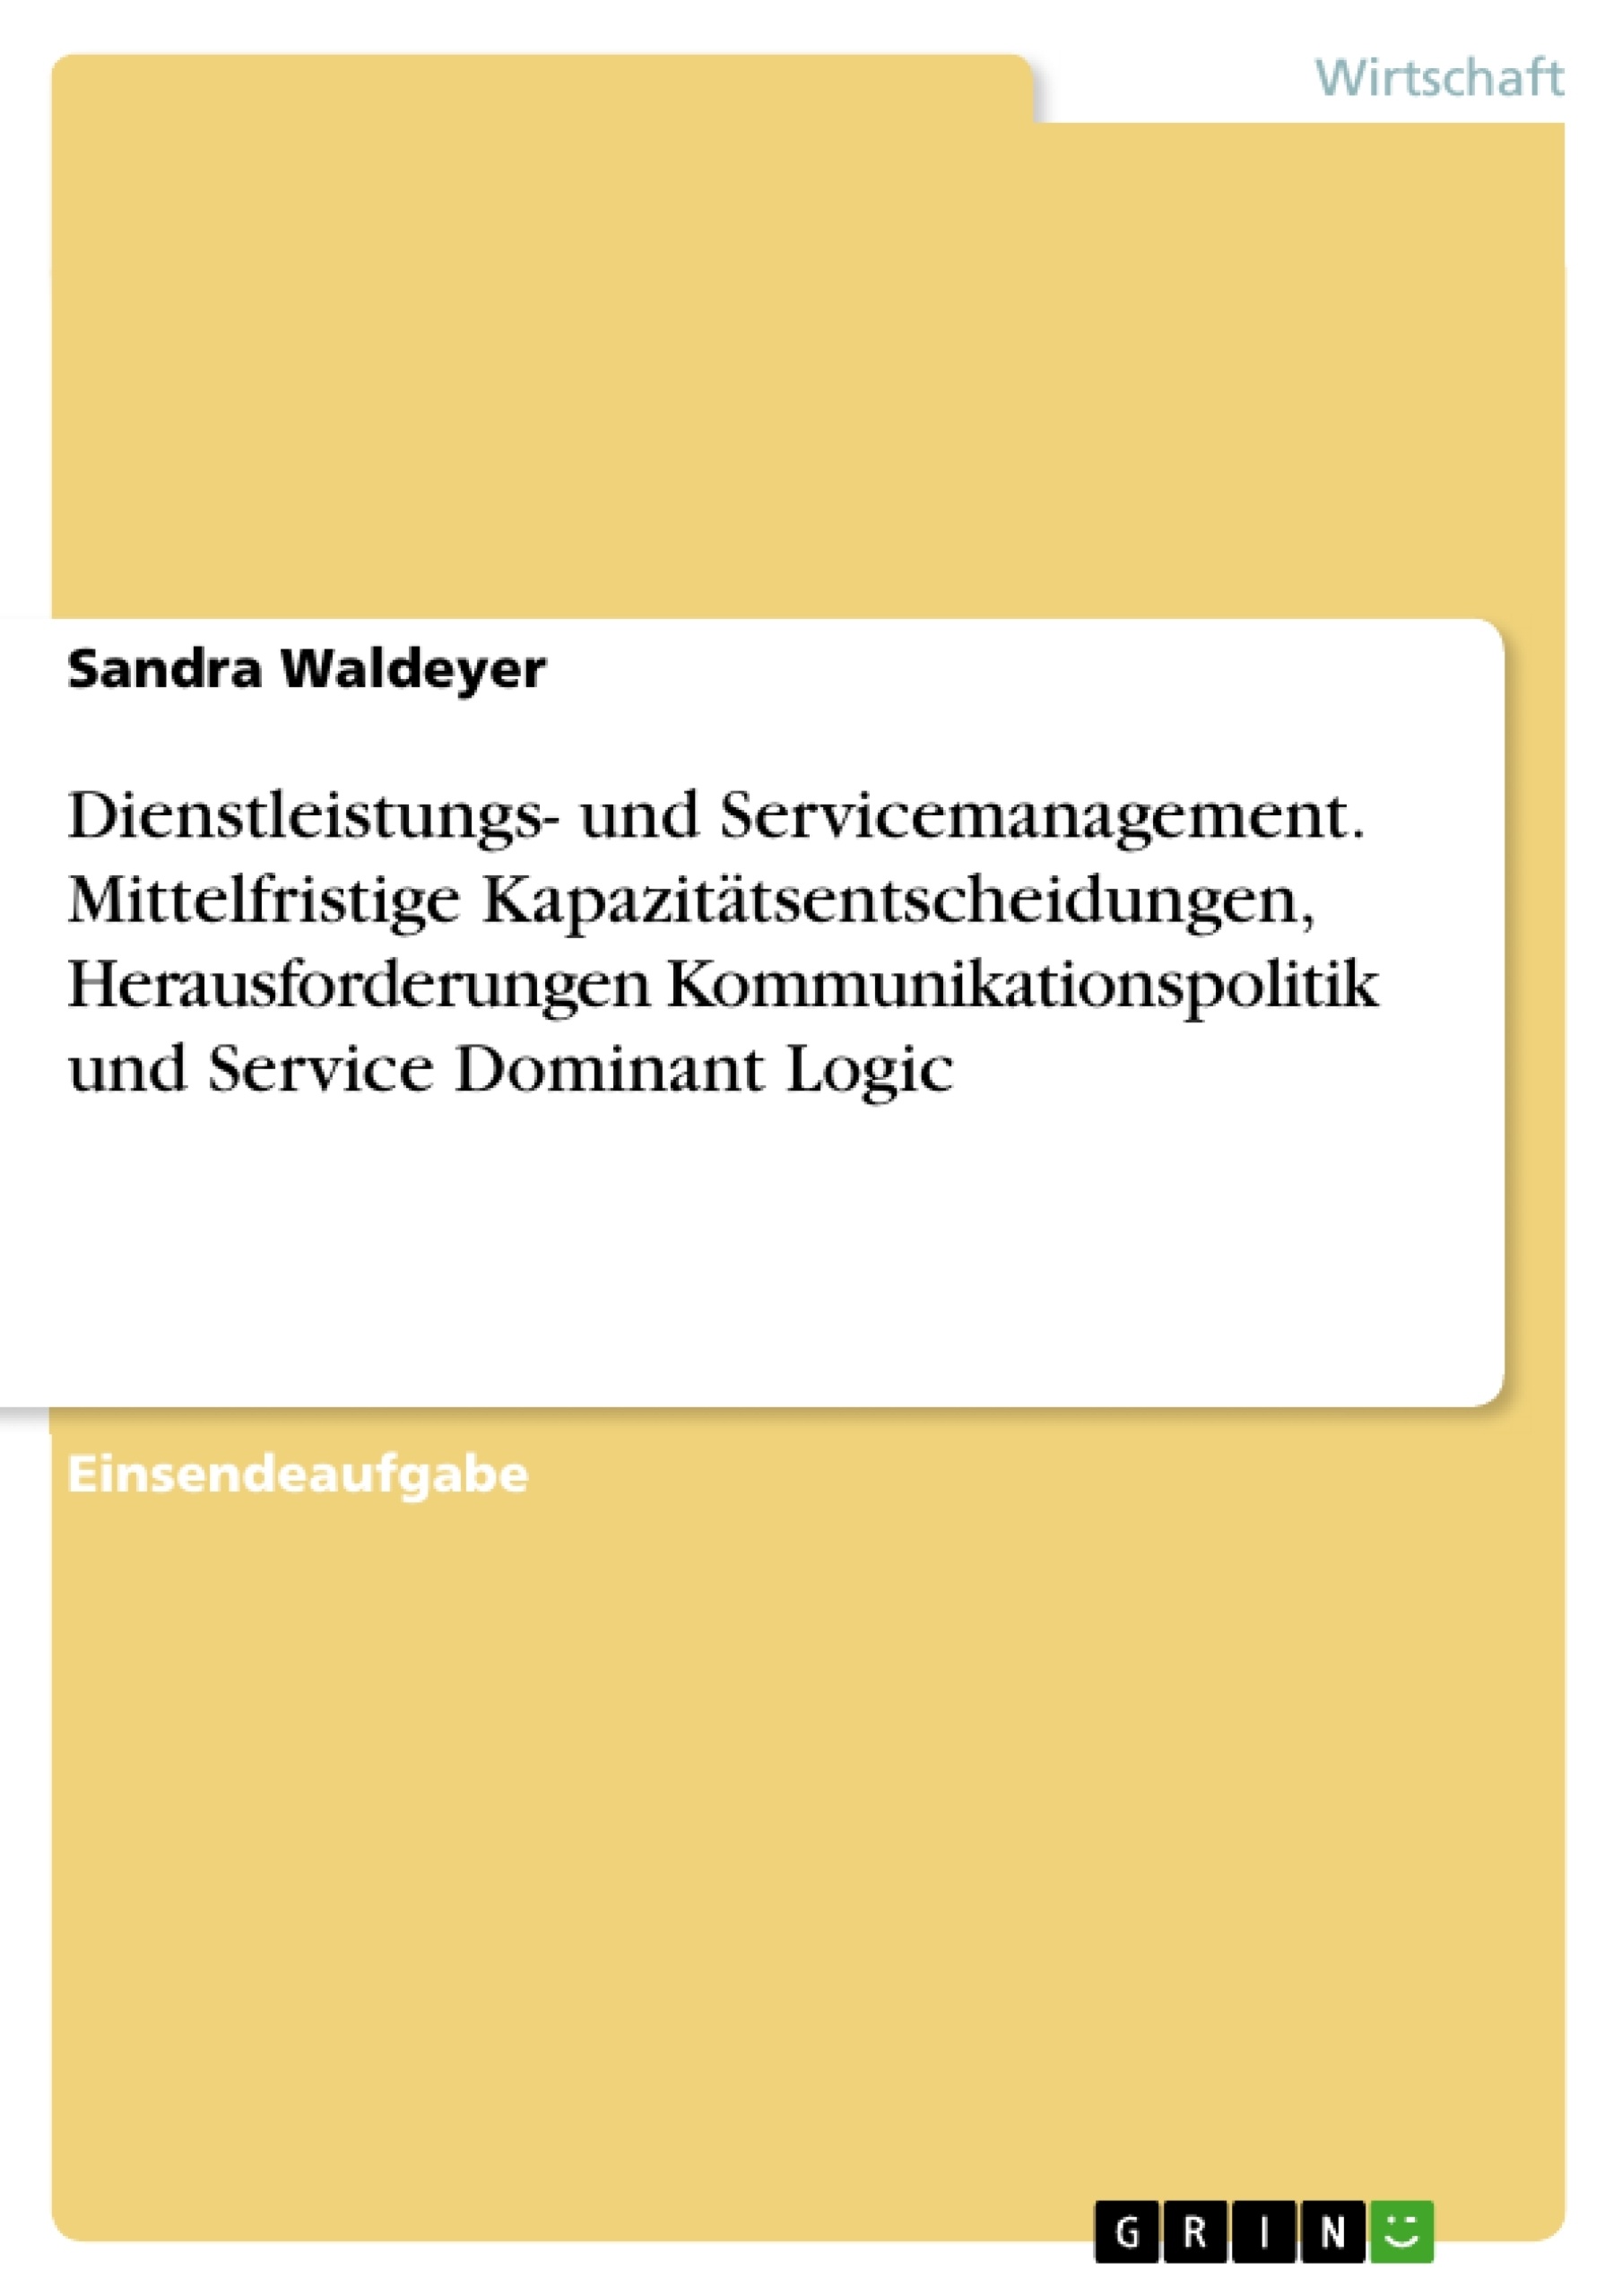 Titre: Dienstleistungs- und Servicemanagement. Mittelfristige Kapazitätsentscheidungen, Herausforderungen Kommunikationspolitik und Service Dominant Logic